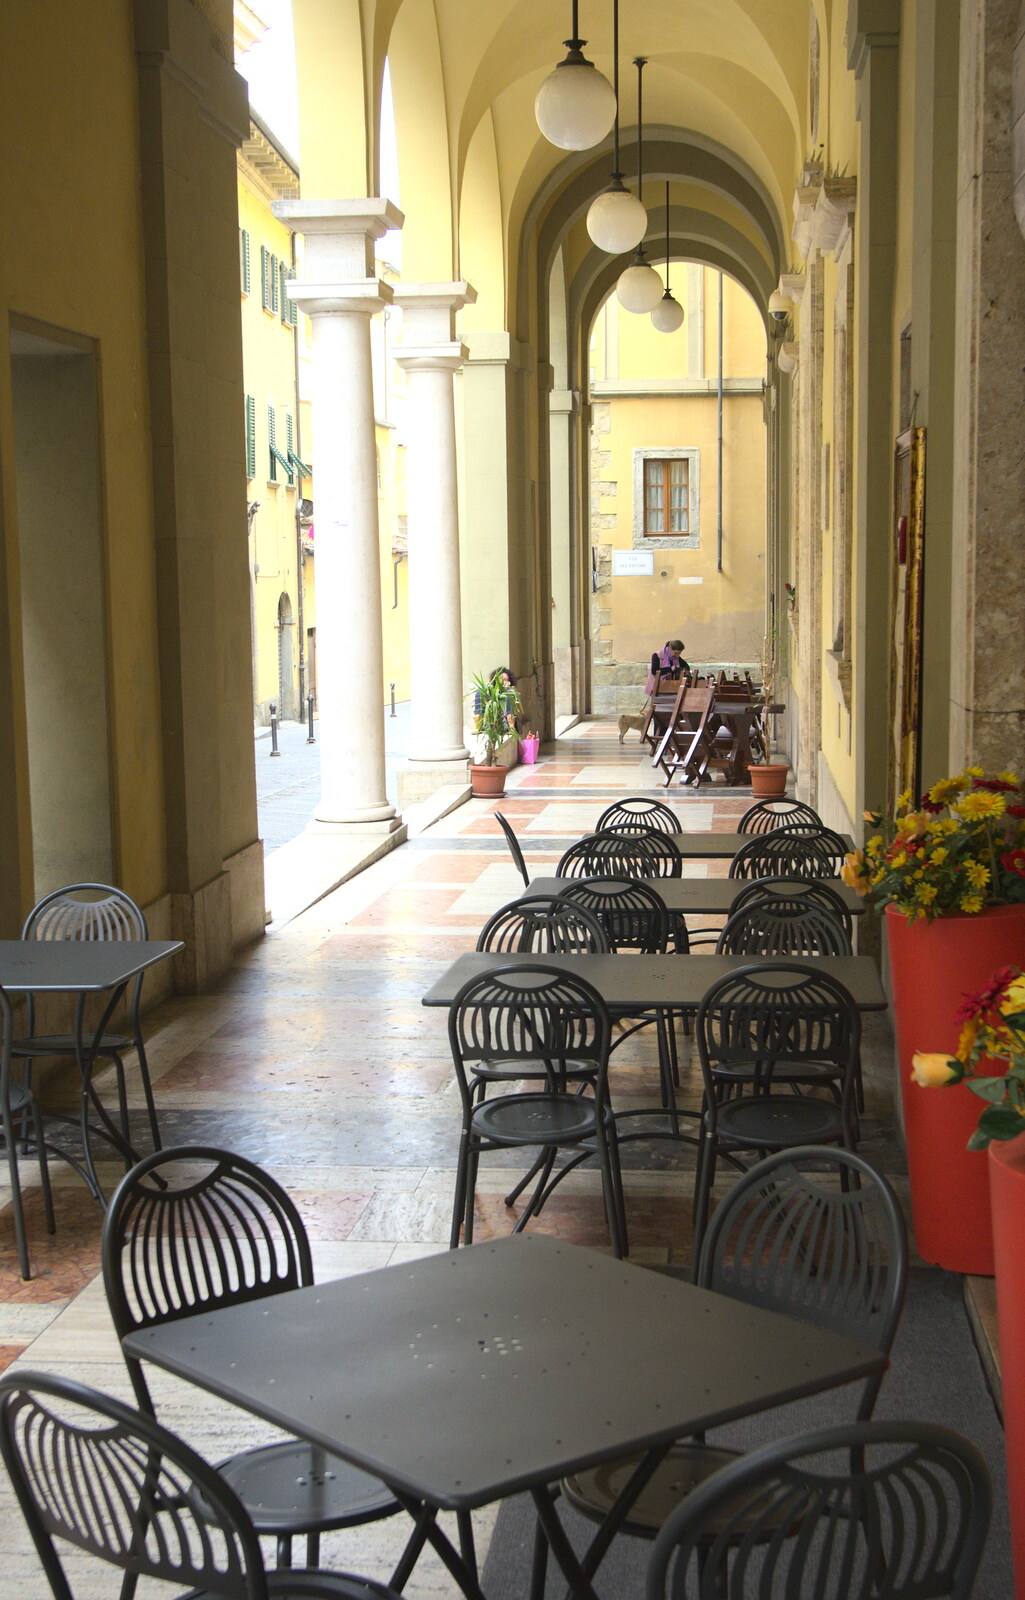 Marconi, Arezzo and the Sagra del Maccherone Festival, Battifolle, Tuscany - 9th June 2013: Café culture